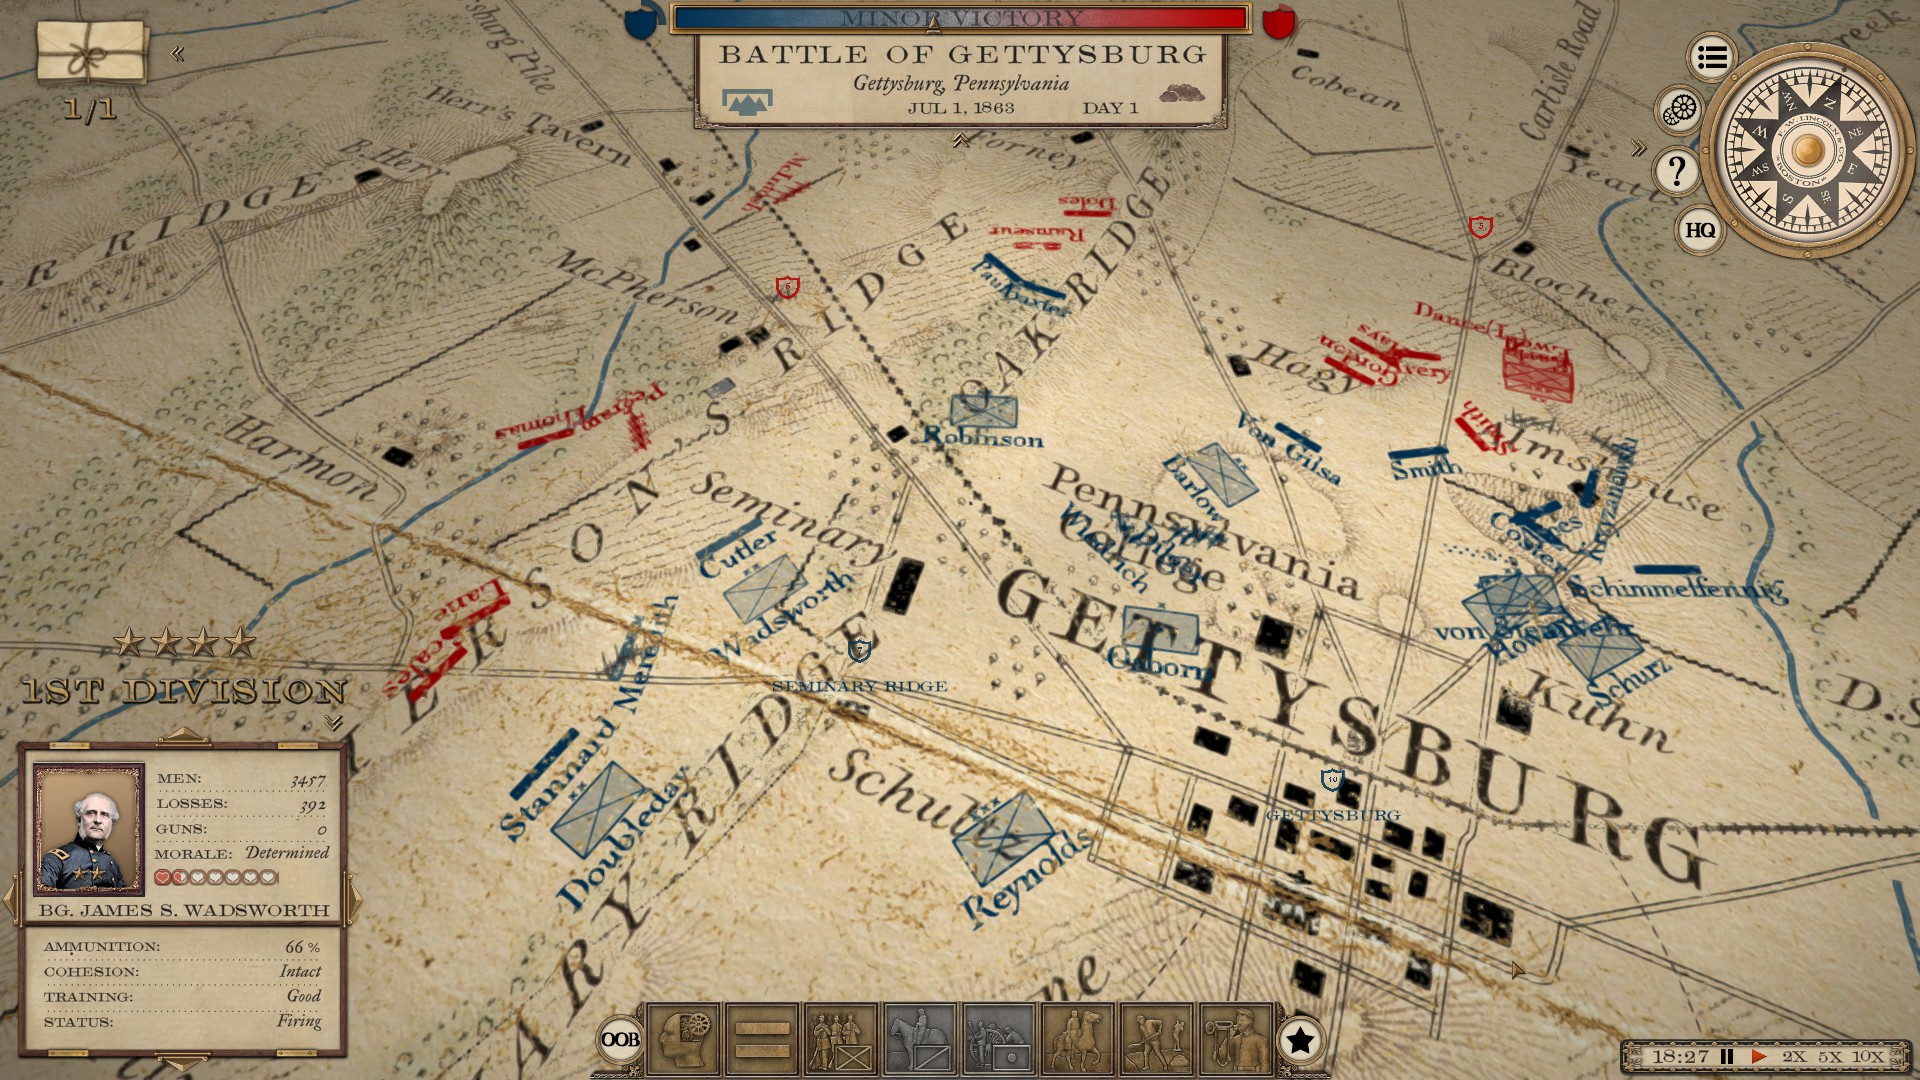 Grand Tactician : The Civil War (1861-1865)